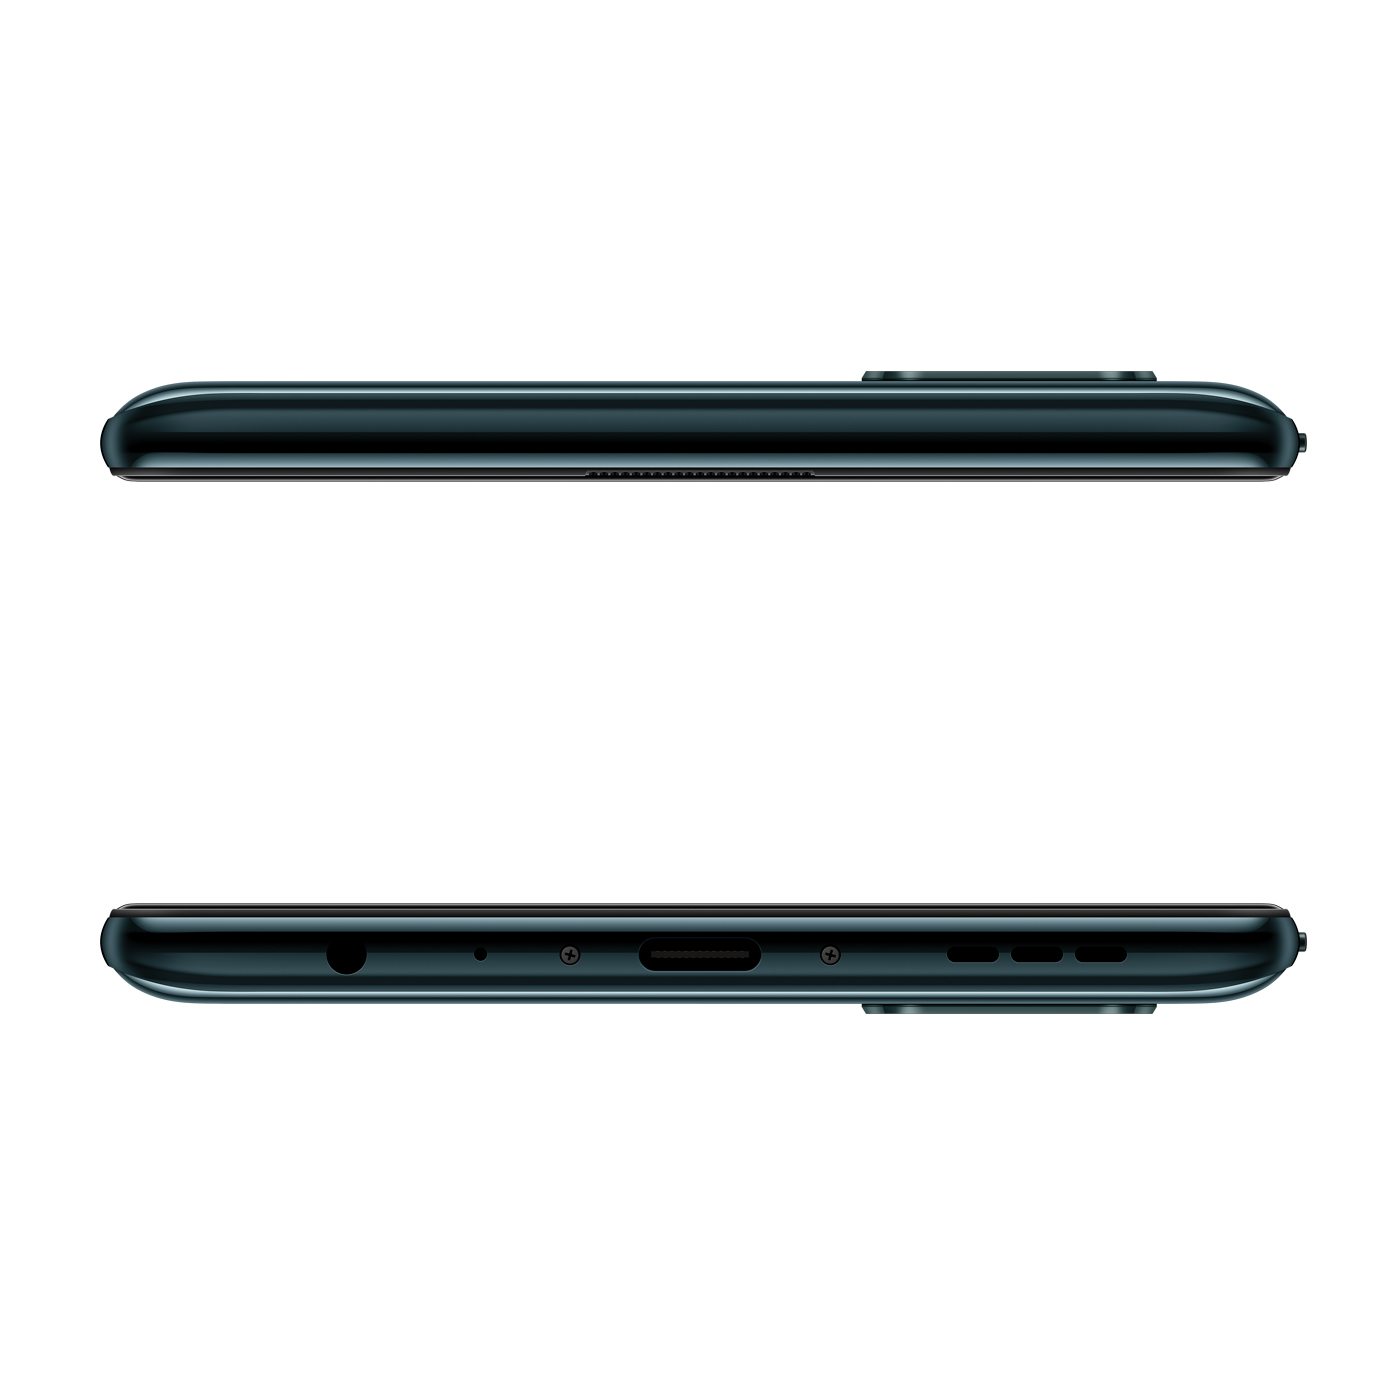 Celular VIVO Y30 - 64GB Negro - Esmerald Black